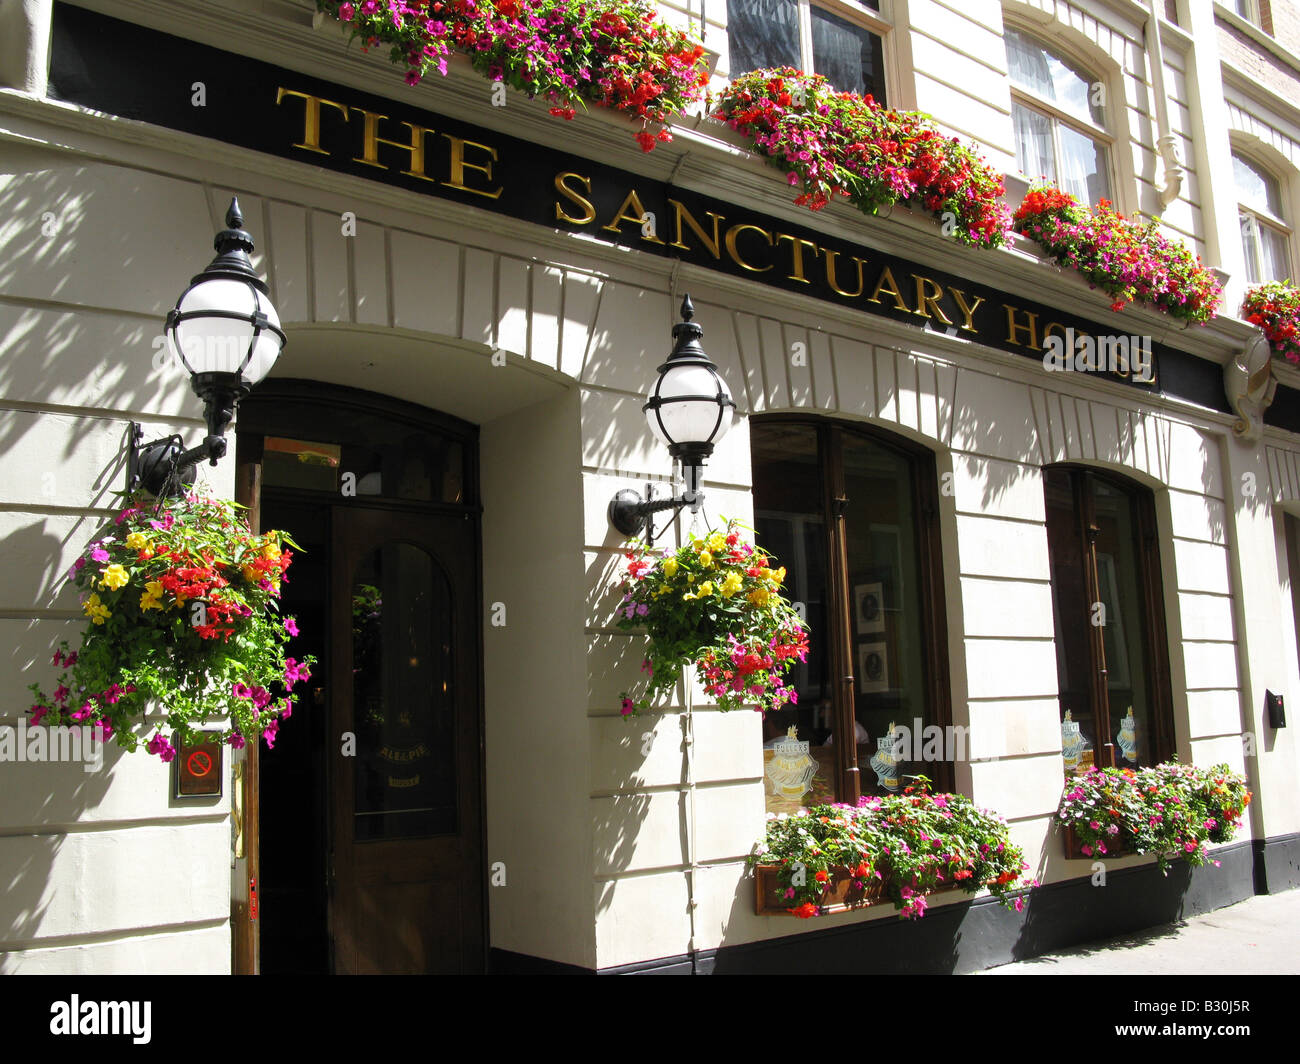 Il Sanctuary House, un gualchiere Ale & Pie House. Tothill Street, Westminster, Londra, Inghilterra, Gran Bretagna, Regno Unito, Gran Bretagna, Europa Foto Stock